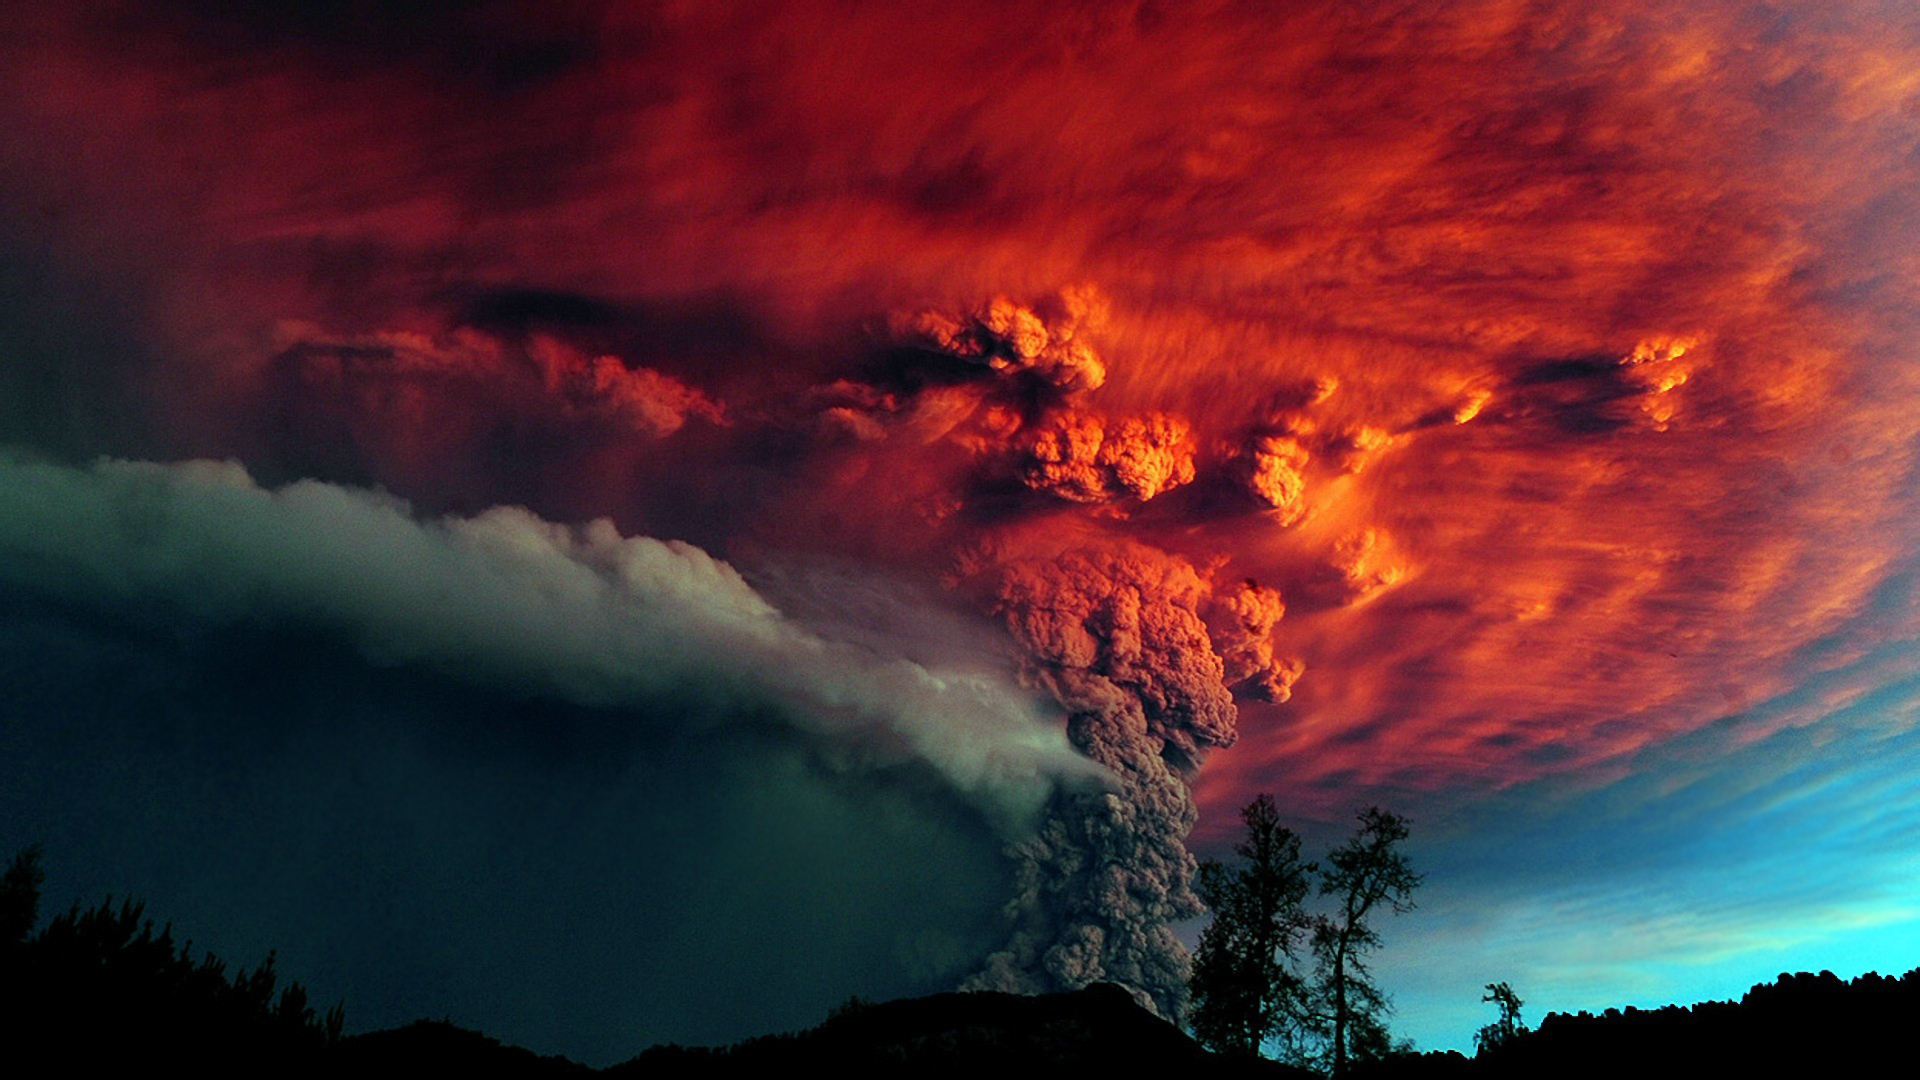 Wallpapers night eruption volcano on the desktop